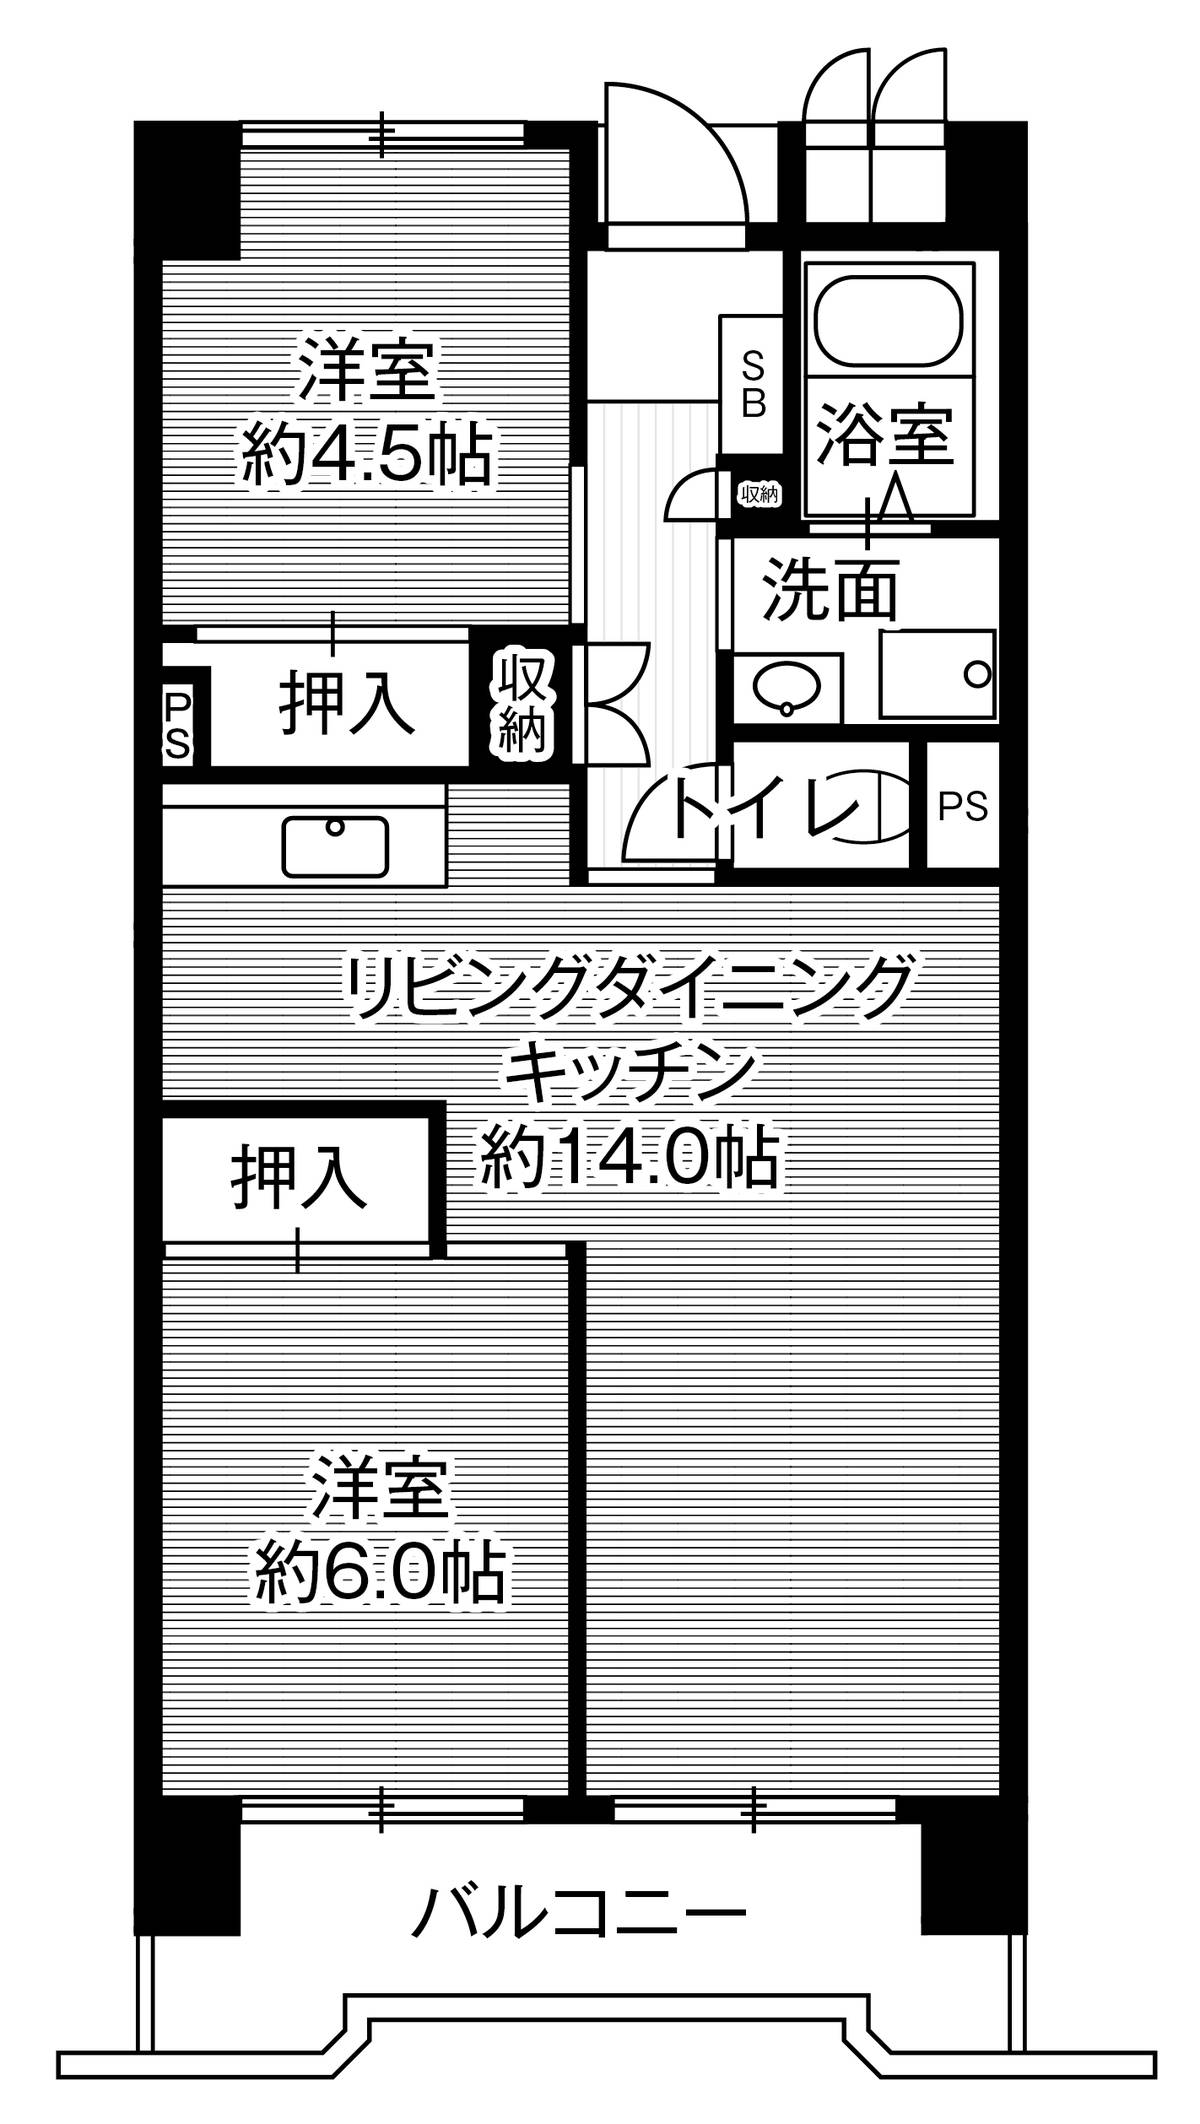 Sơ đồ phòng 2LDK của Village House Kasadera Tower ở Minami-ku